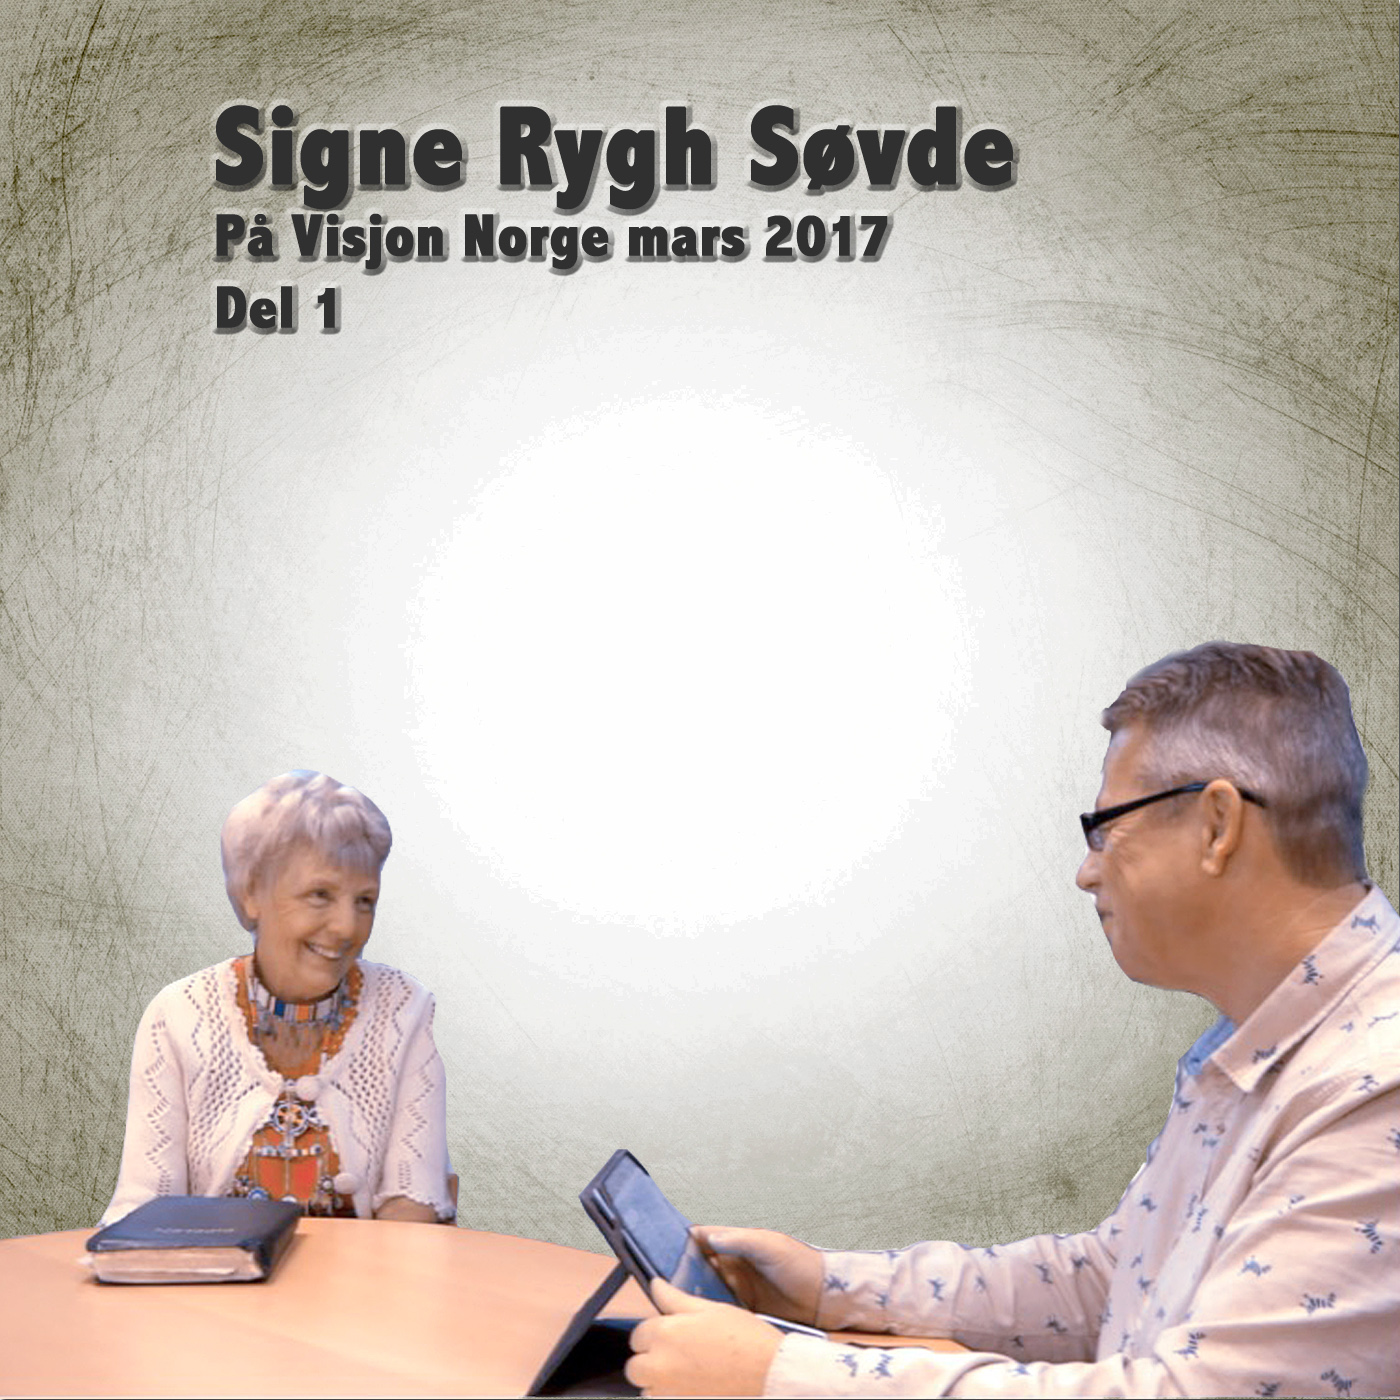 Signe Rygh Søvde Del 1